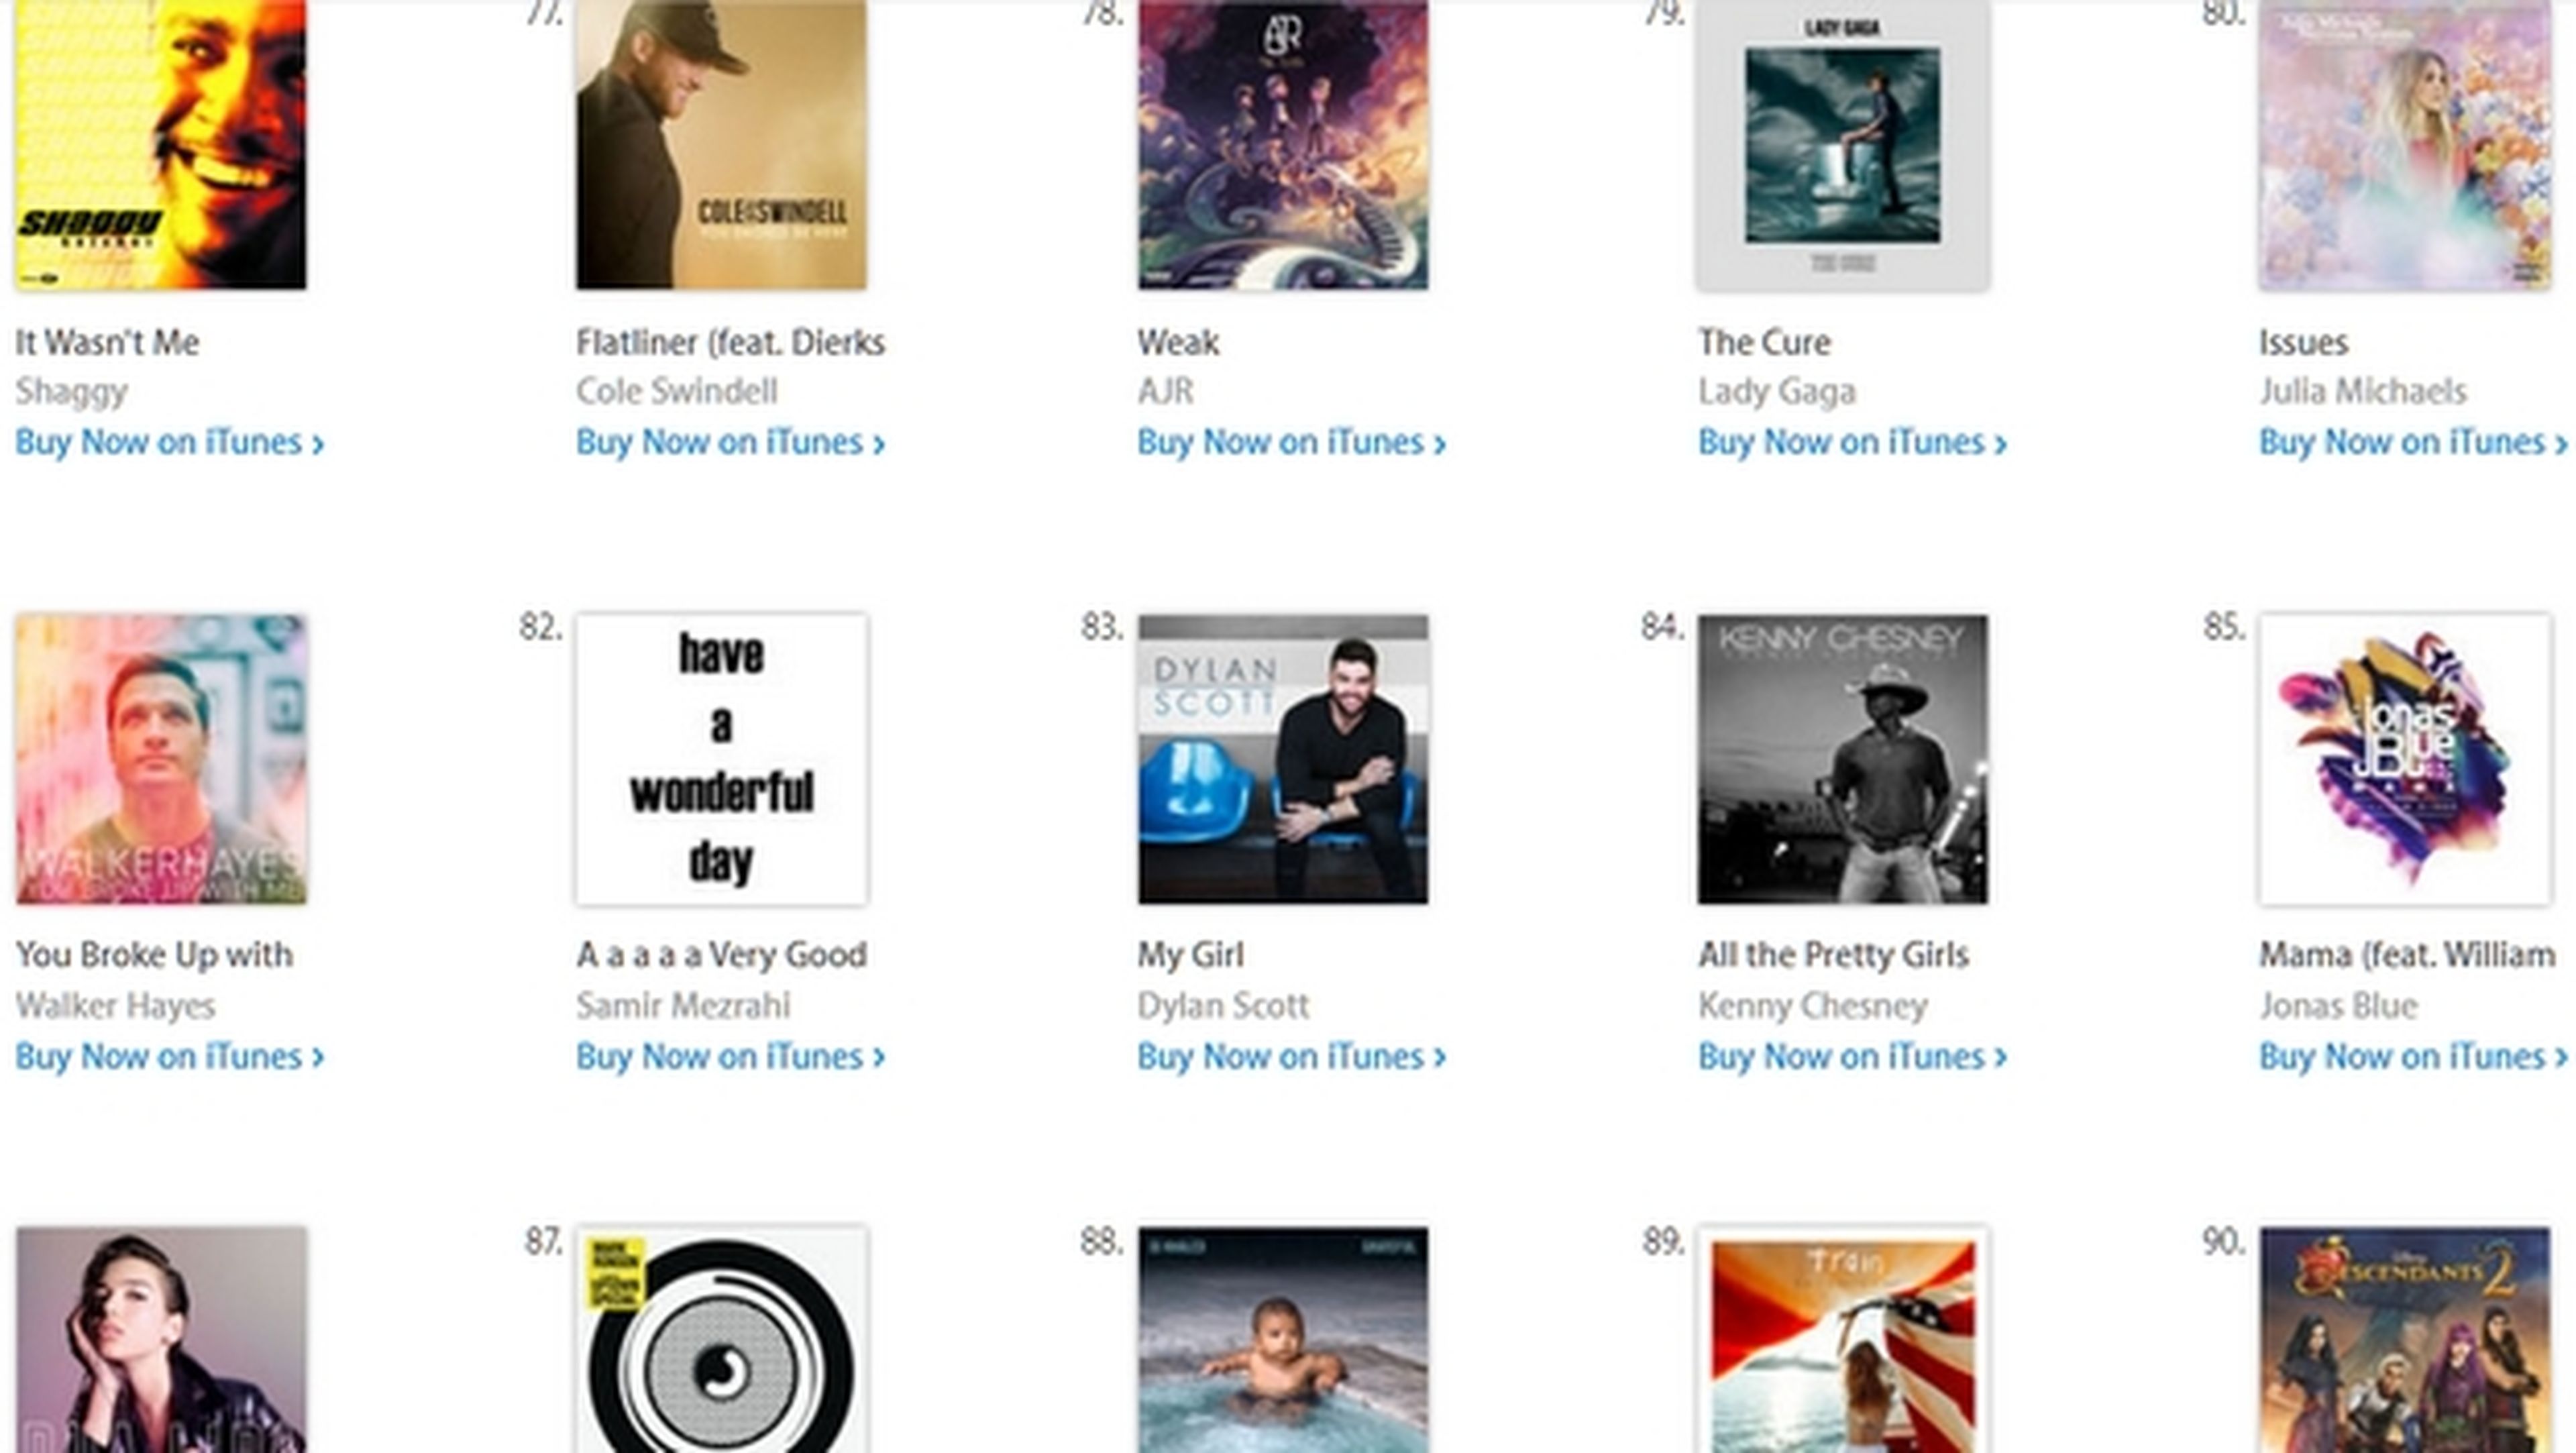 La canción A a a a a Very Good Song, que no tiene música ni letra, solo silencio, ha entrado en el Top 70 de las más vendidas en iTunes. ¿Quieres saber por qué?